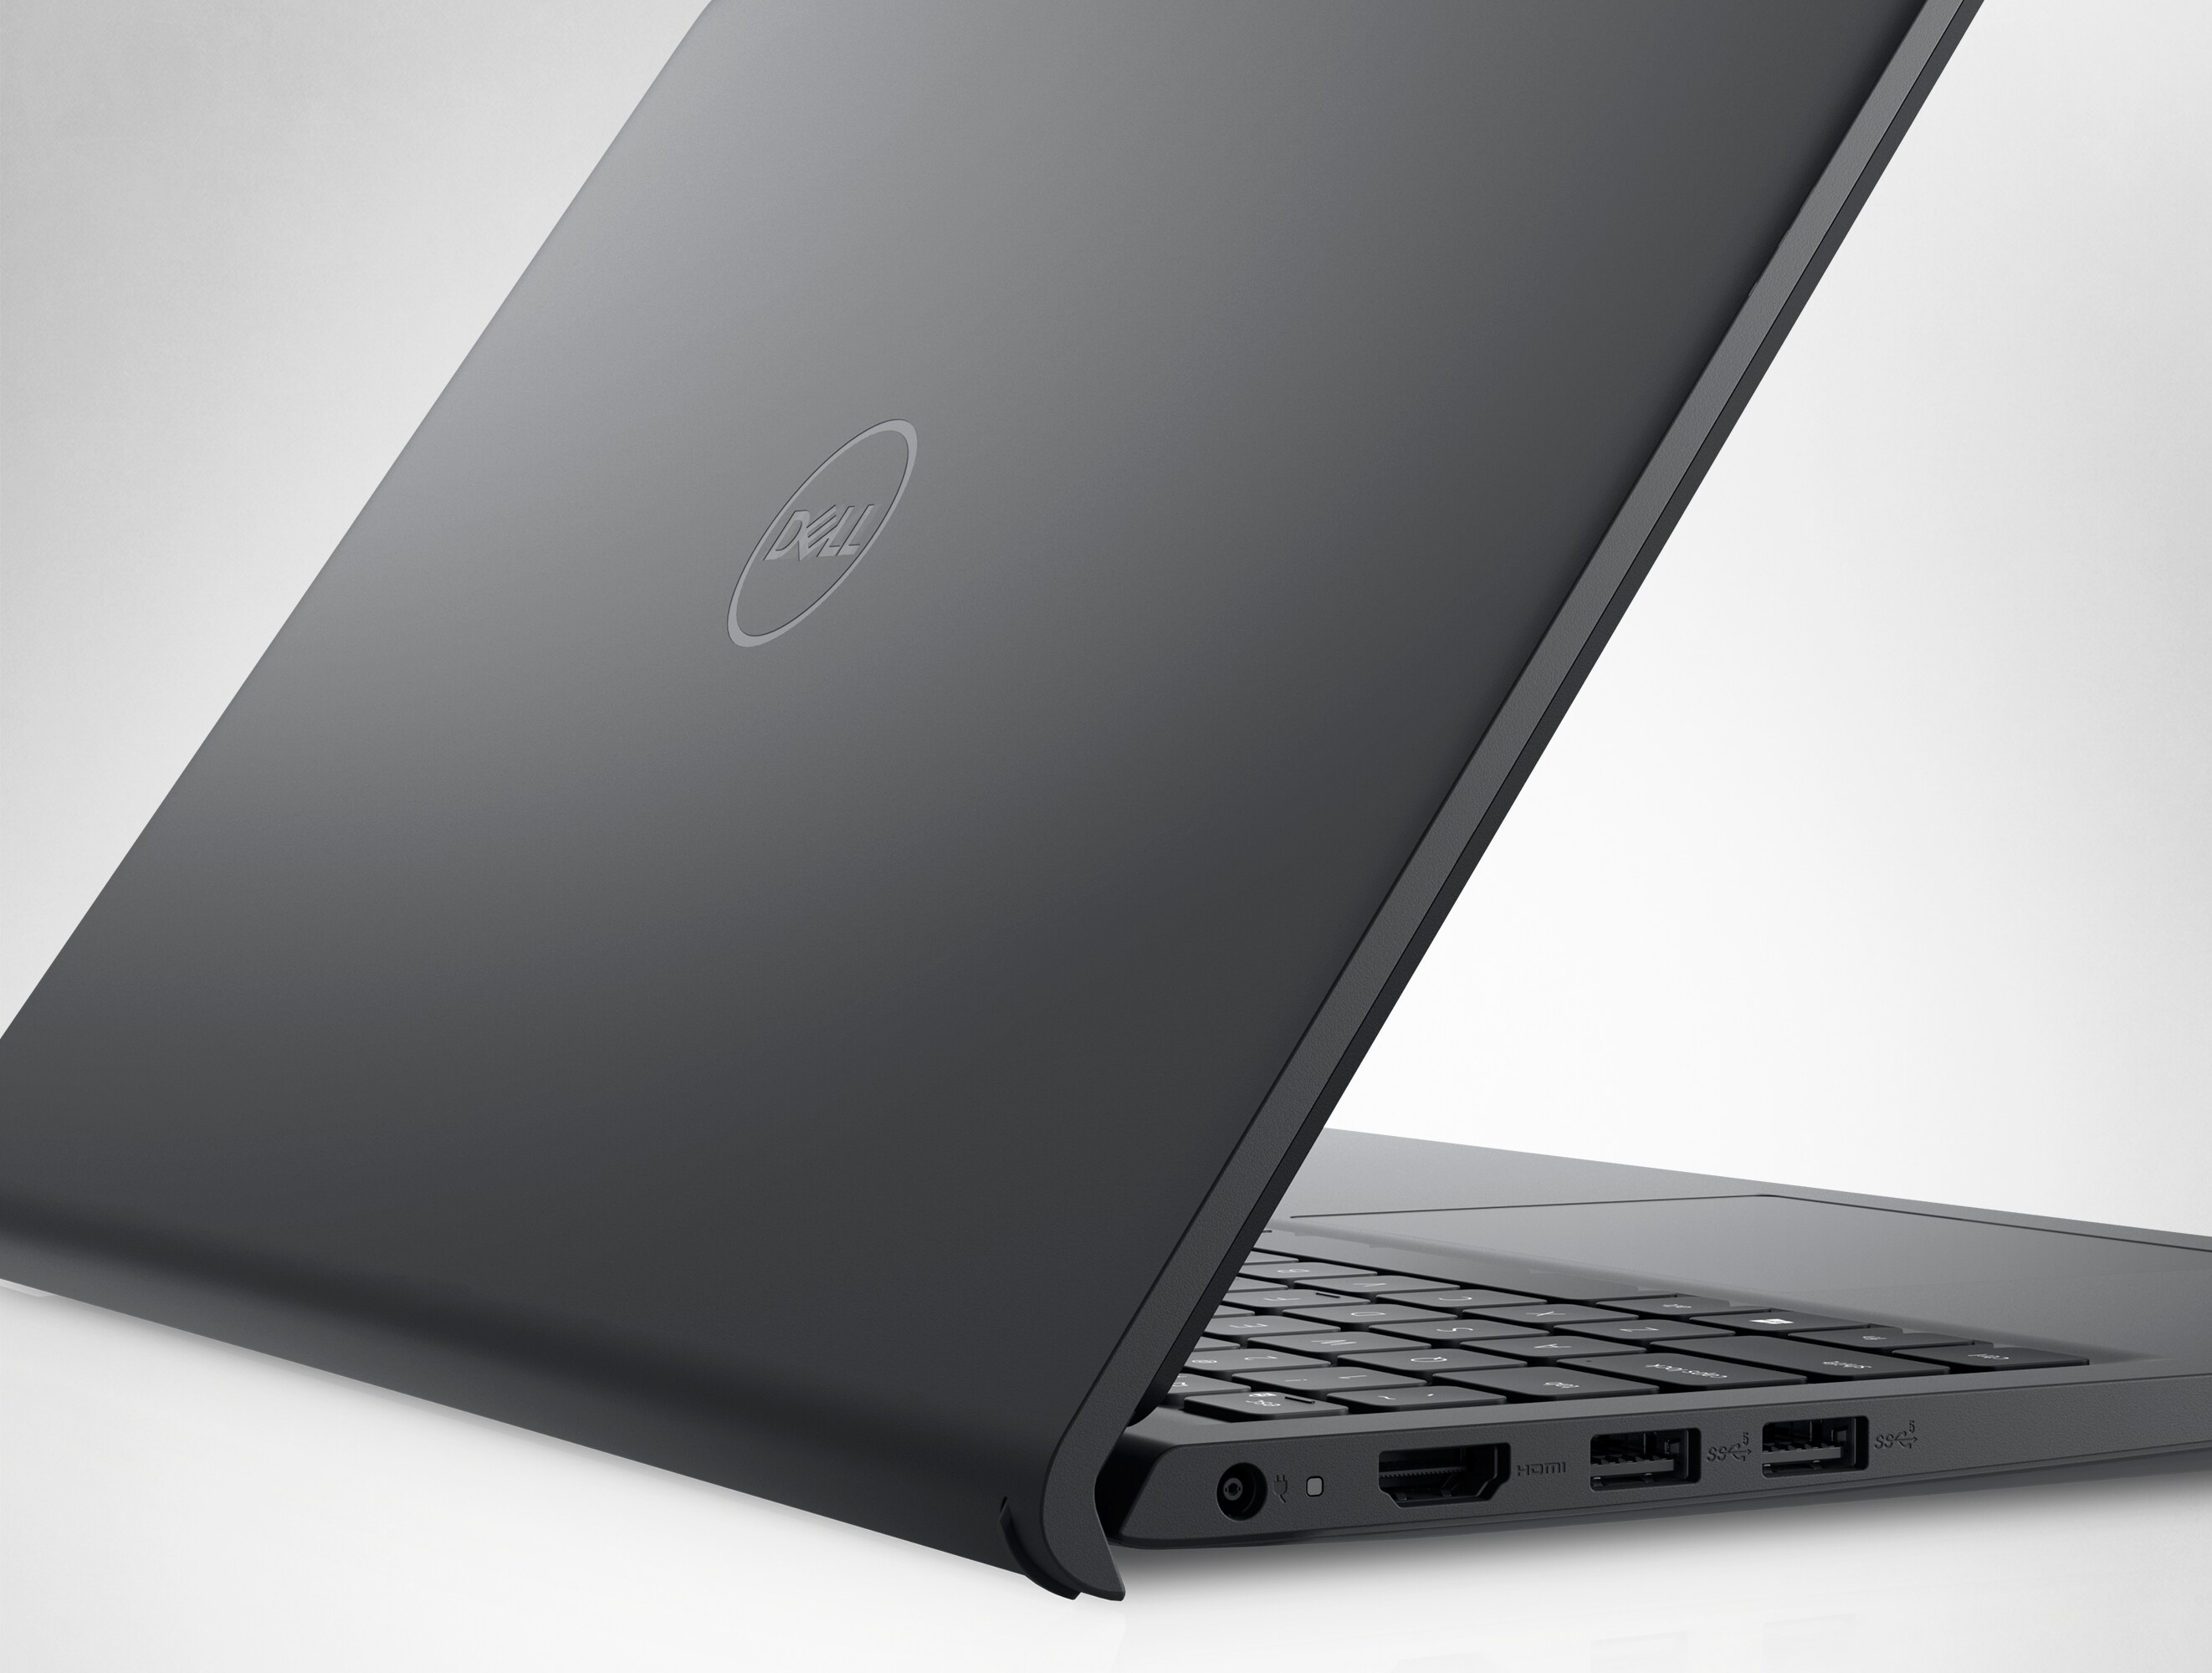 Image d’un ordinateur portable Dell Inspiron 15 3521 ouvert vu de l’arrière; le logo Dell est visible.